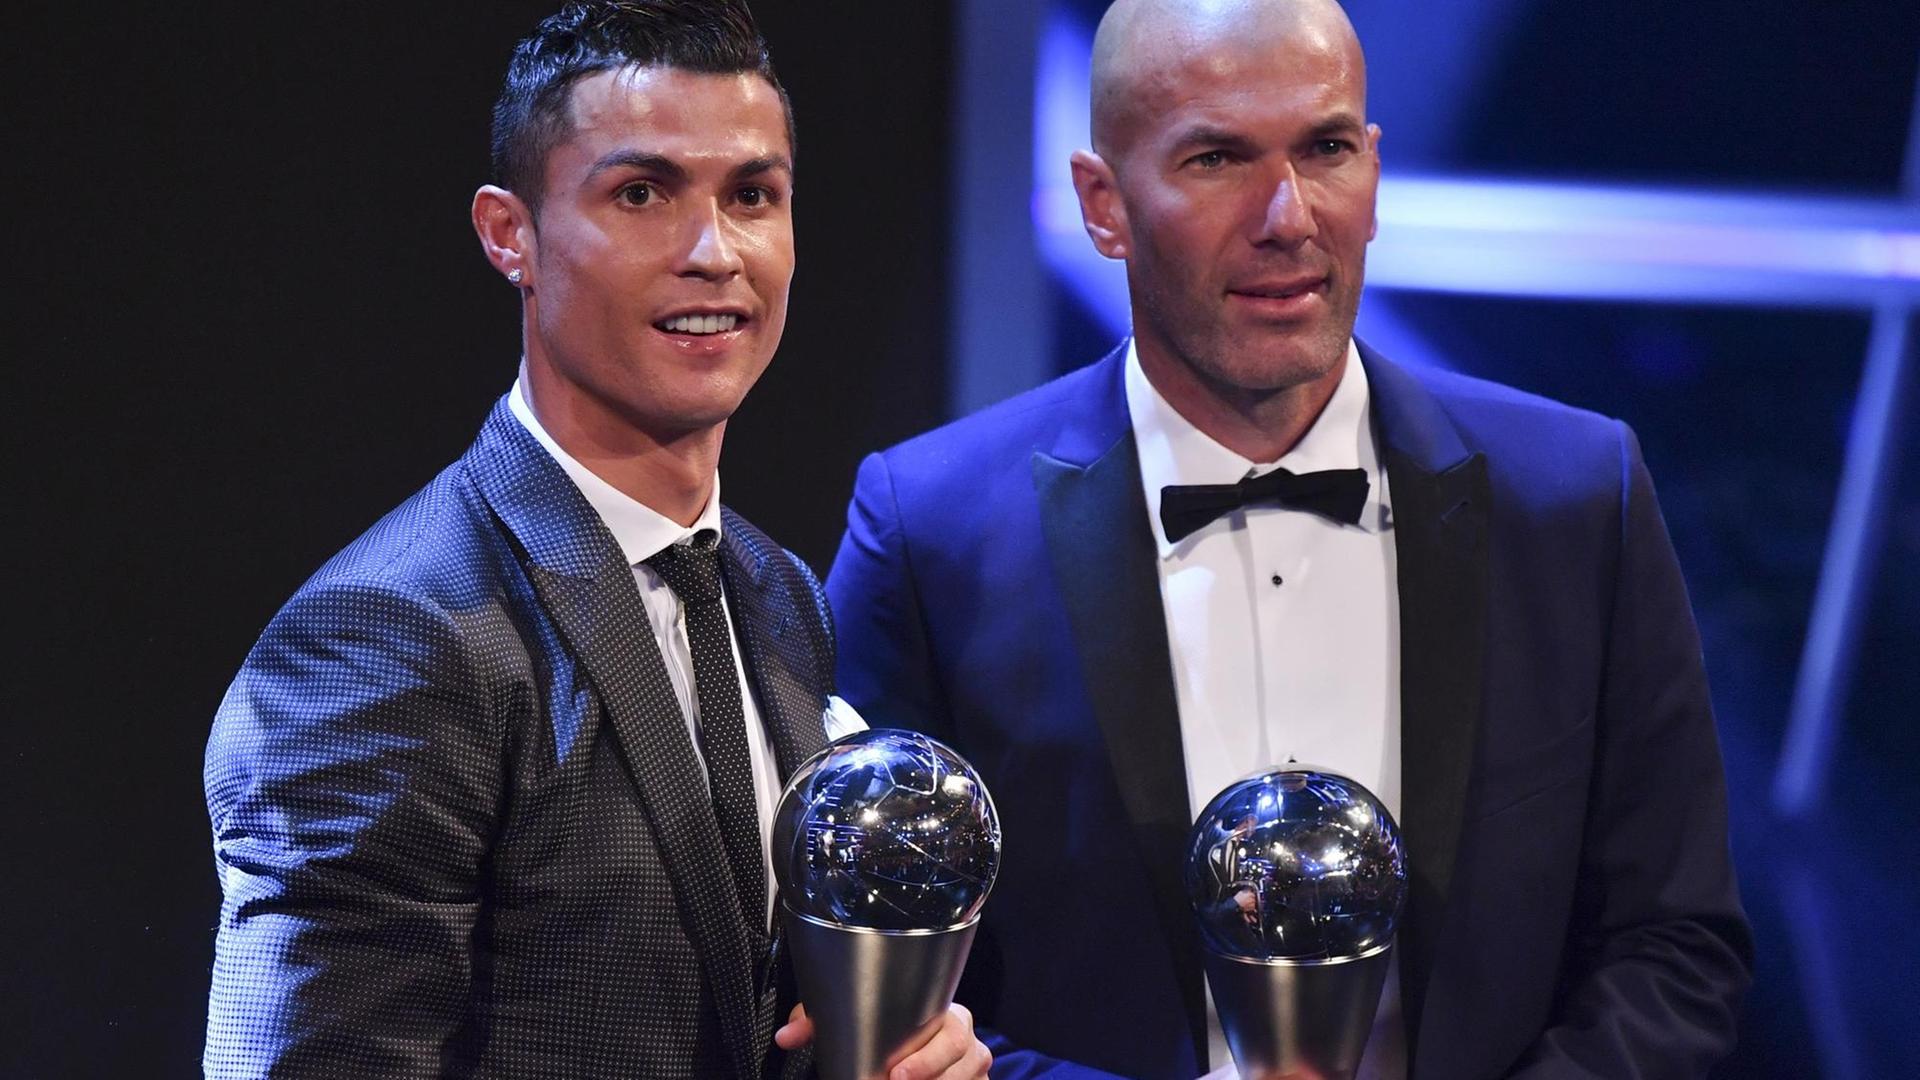 Cristiano Ronaldo und Zinédine Zidane halten ihre Preise in der Hand